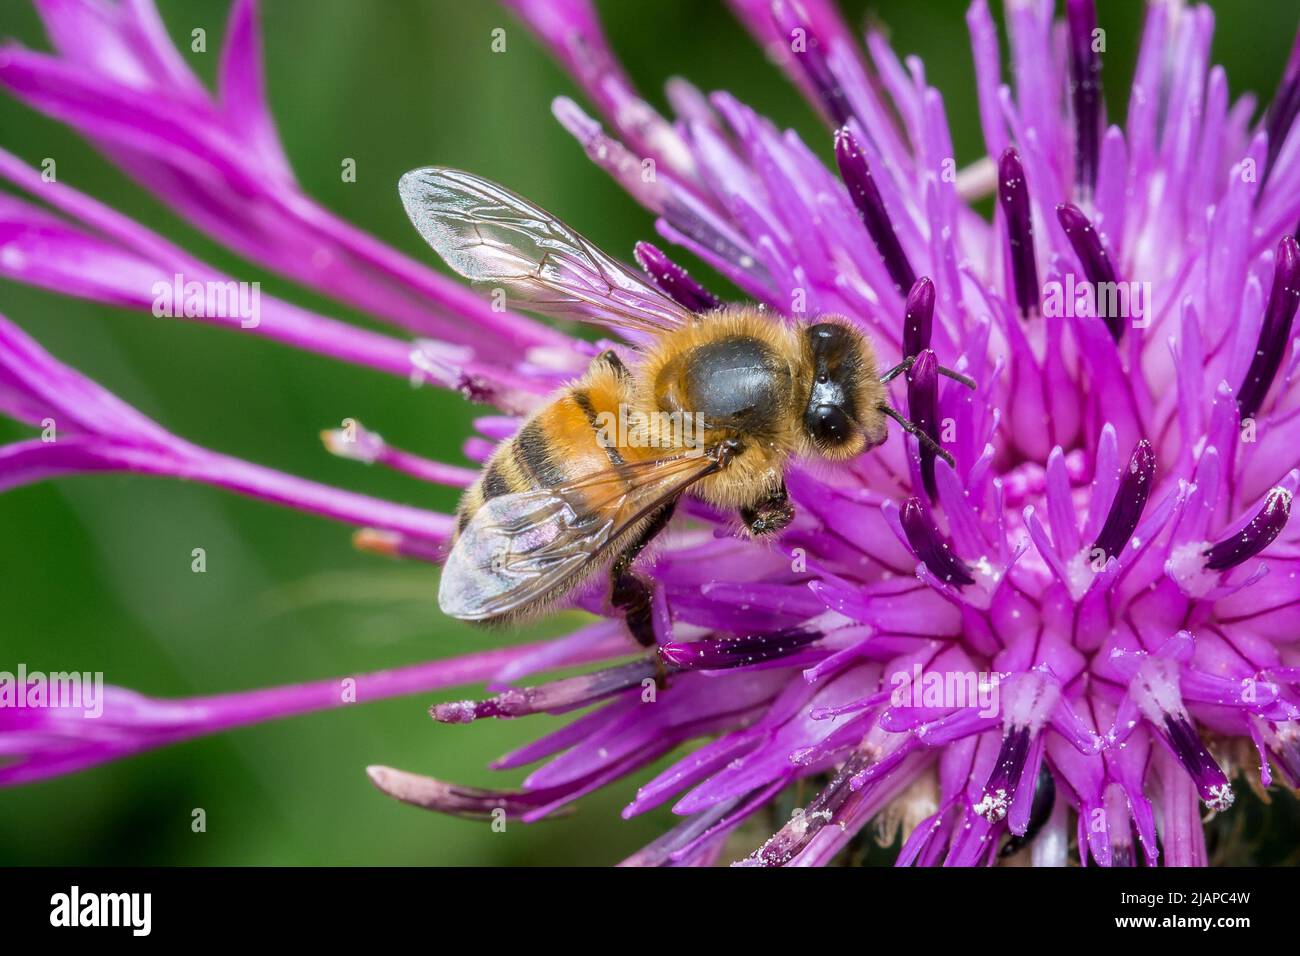 Eine europäische Honigbiene (APIs mellifera) auf einer lila Blume. Aufgenommen in Nose's Point, Seaham, Großbritannien Stockfoto